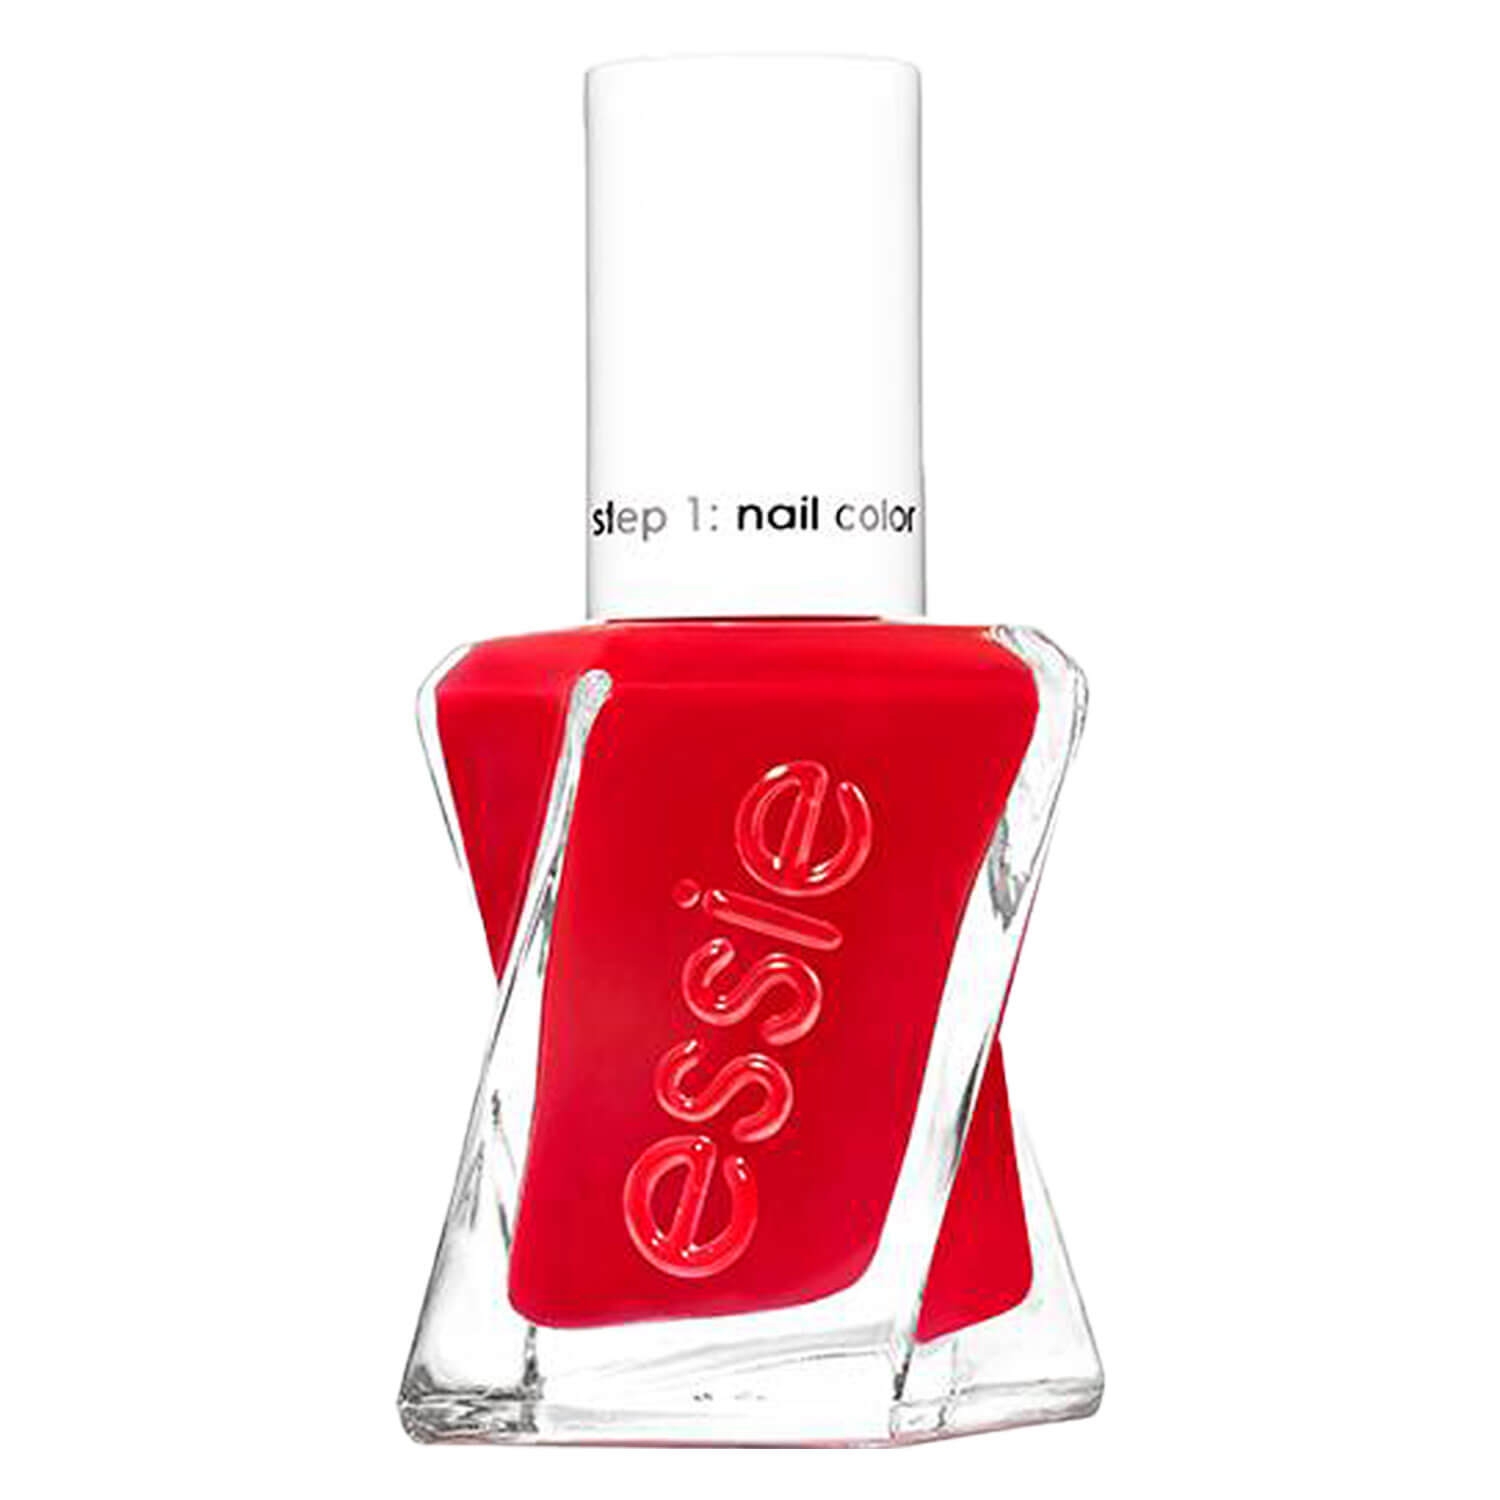 Produktbild von essie gel couture - lady in red 510